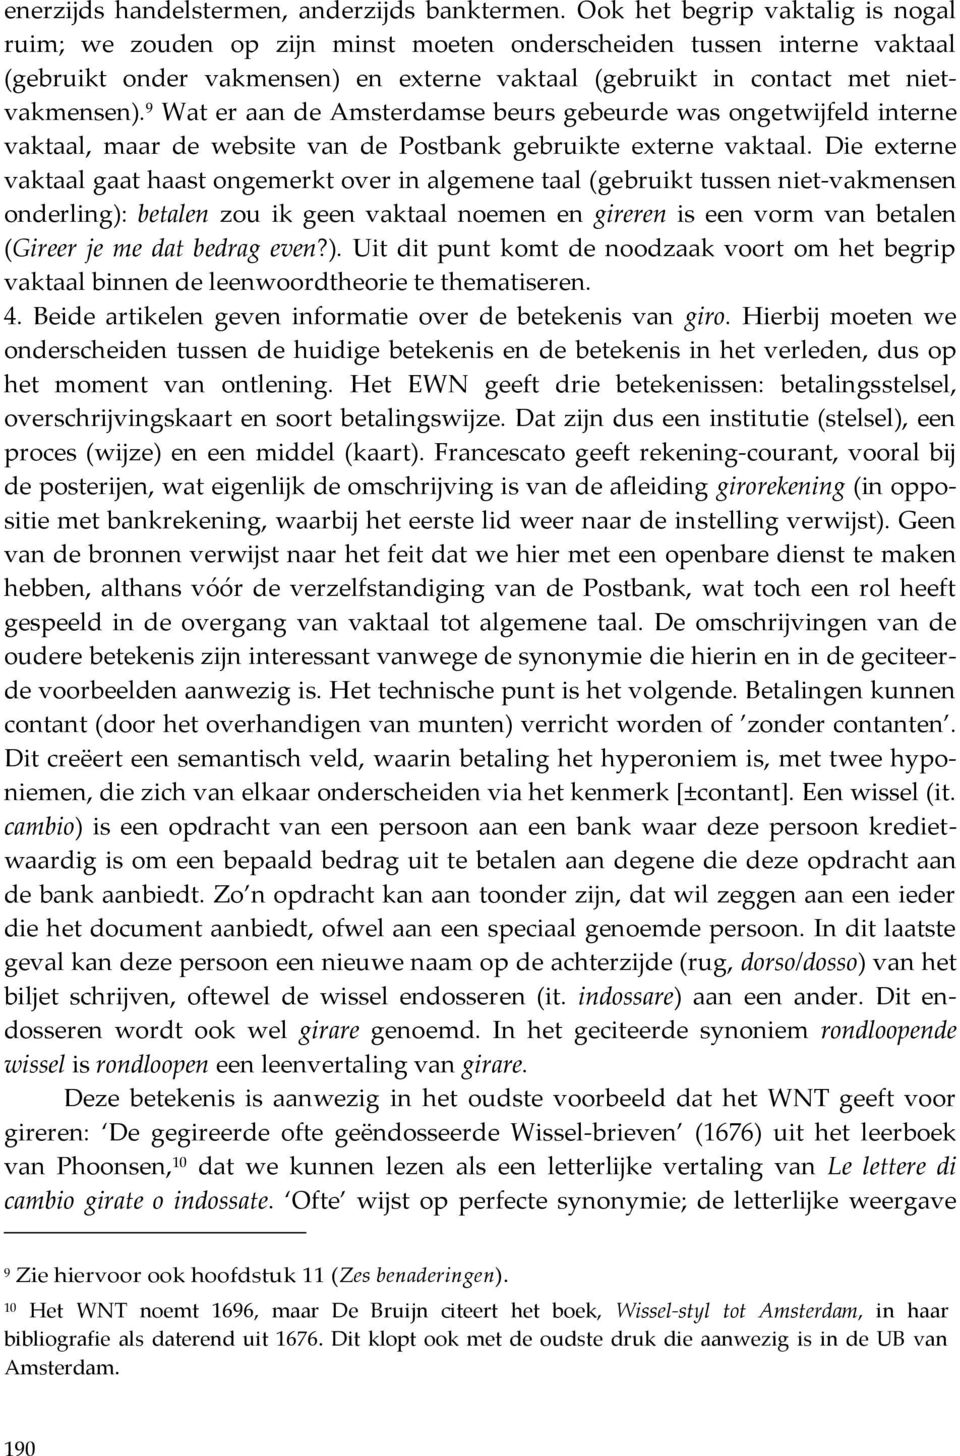 9 Wat er aan de Amsterdamse beurs gebeurde was ongetwijfeld interne vaktaal, maar de website van de Postbank gebruikte externe vaktaal.